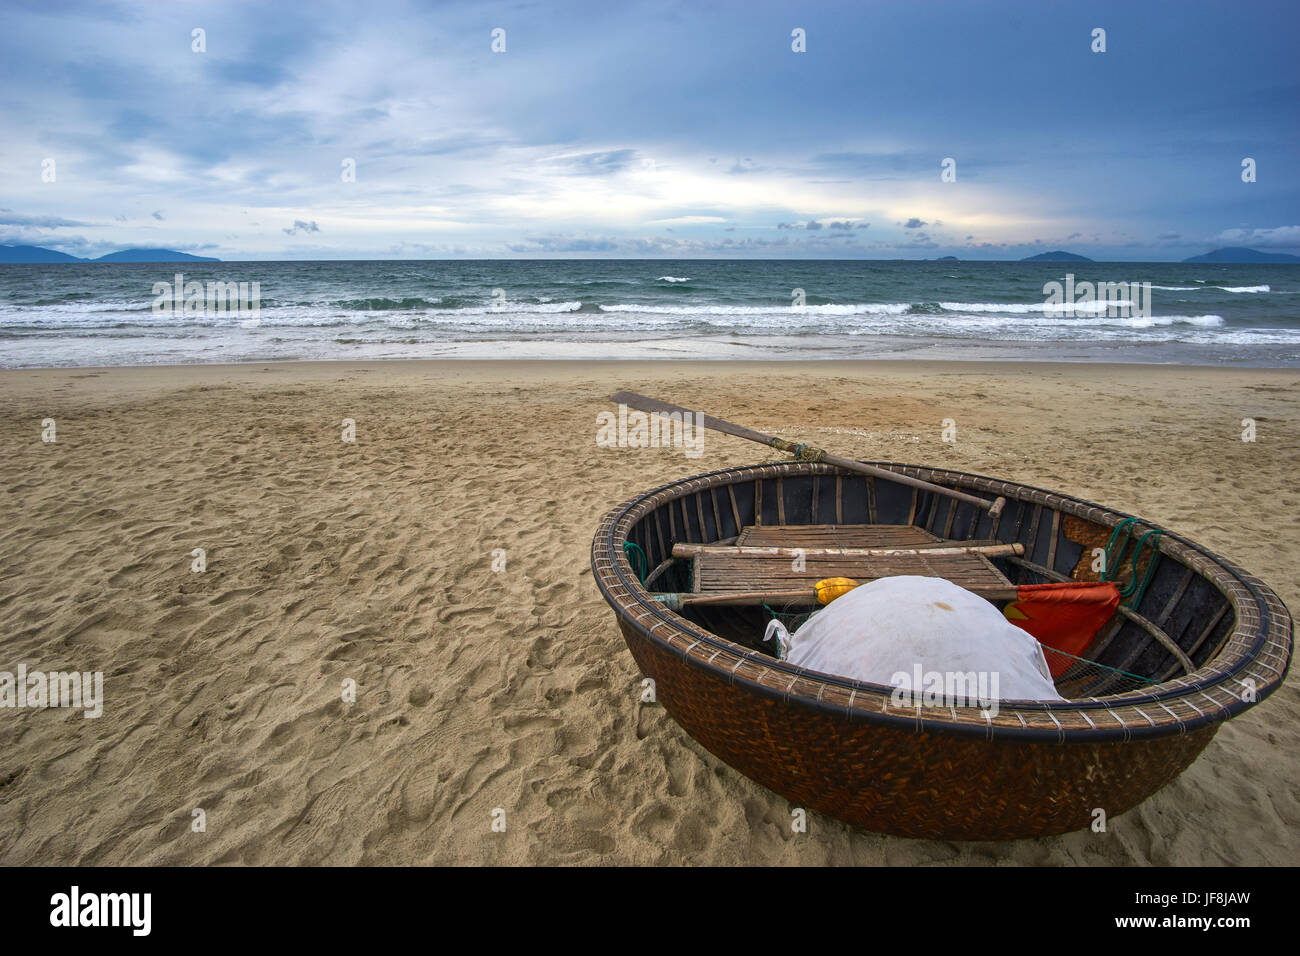 Soirée orageuse à la plage avec des nuages et des vagues. Bateau de coco traditionnel vietnamien à l'avant-plan. Hoi An, la plage de An Bang. Banque D'Images